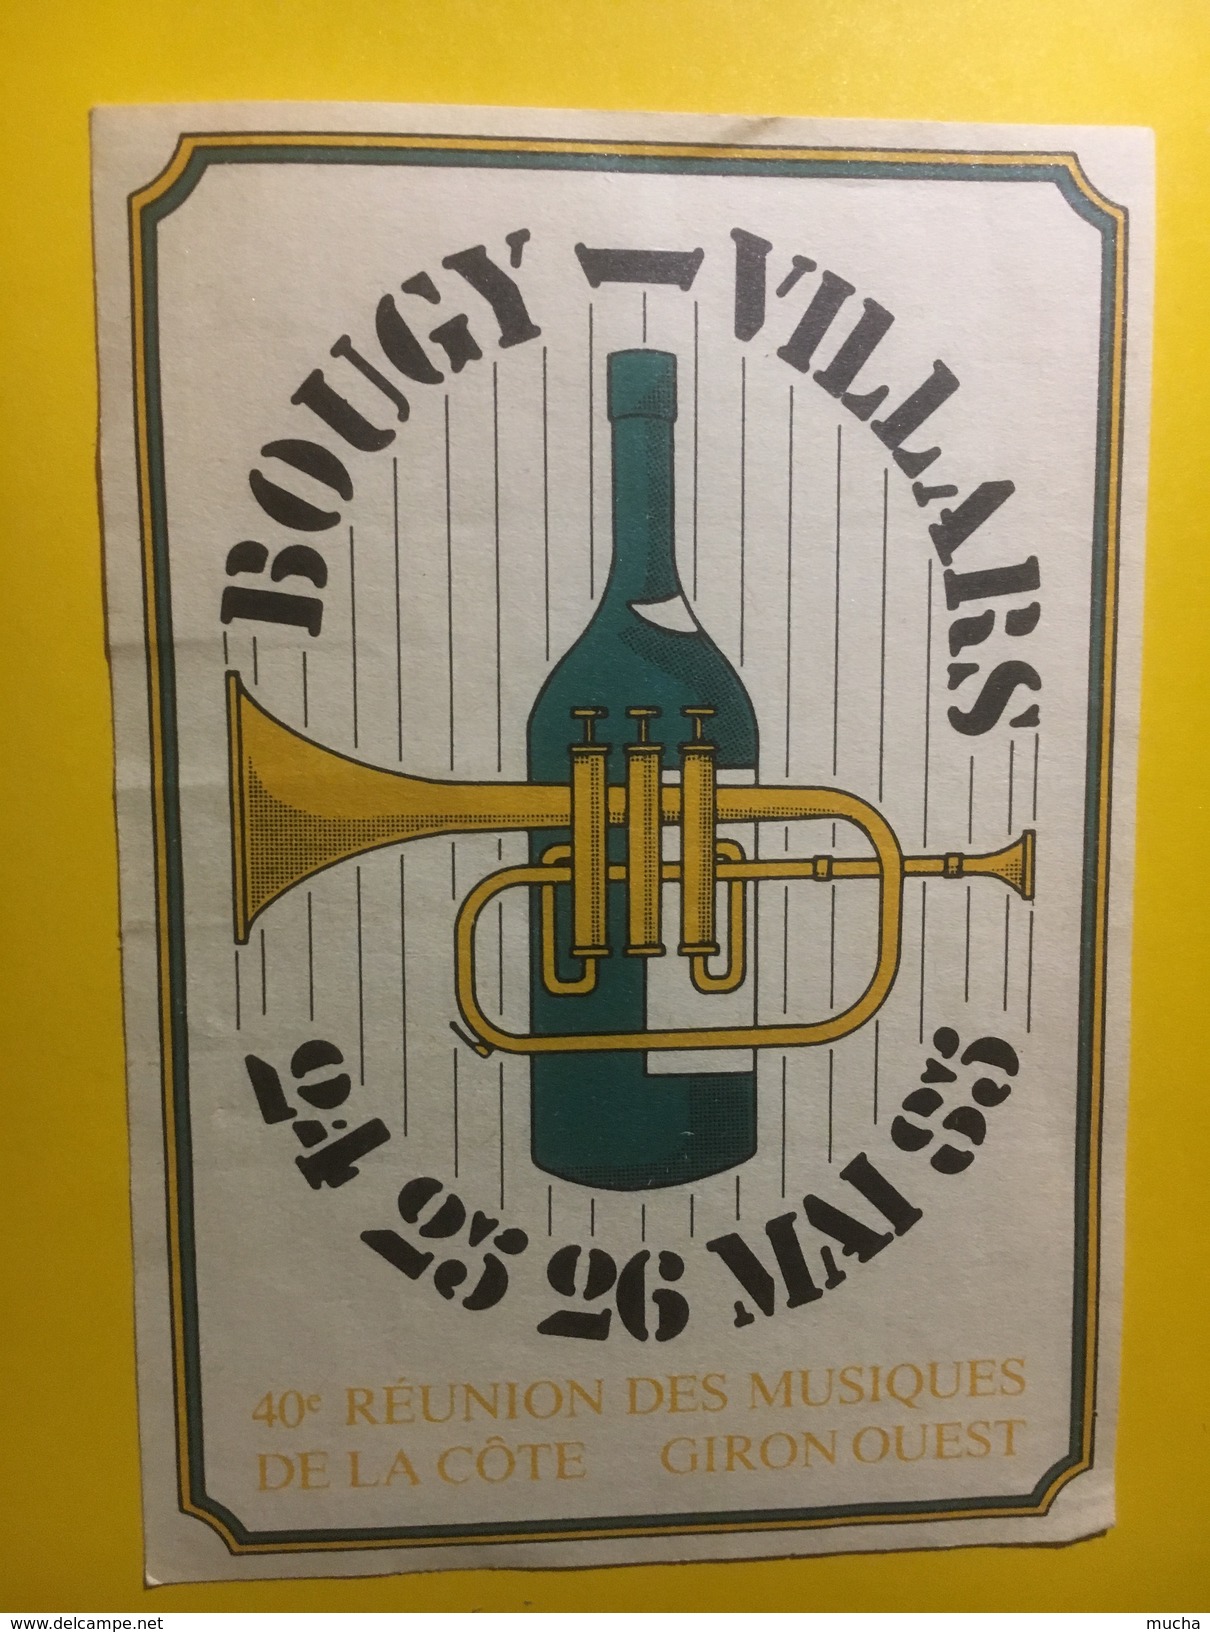 3616 - Suisse Vaud 40e Réunion Des Musiques De La Côte Giron Ouest Bougy-Villars 1985 - Musik